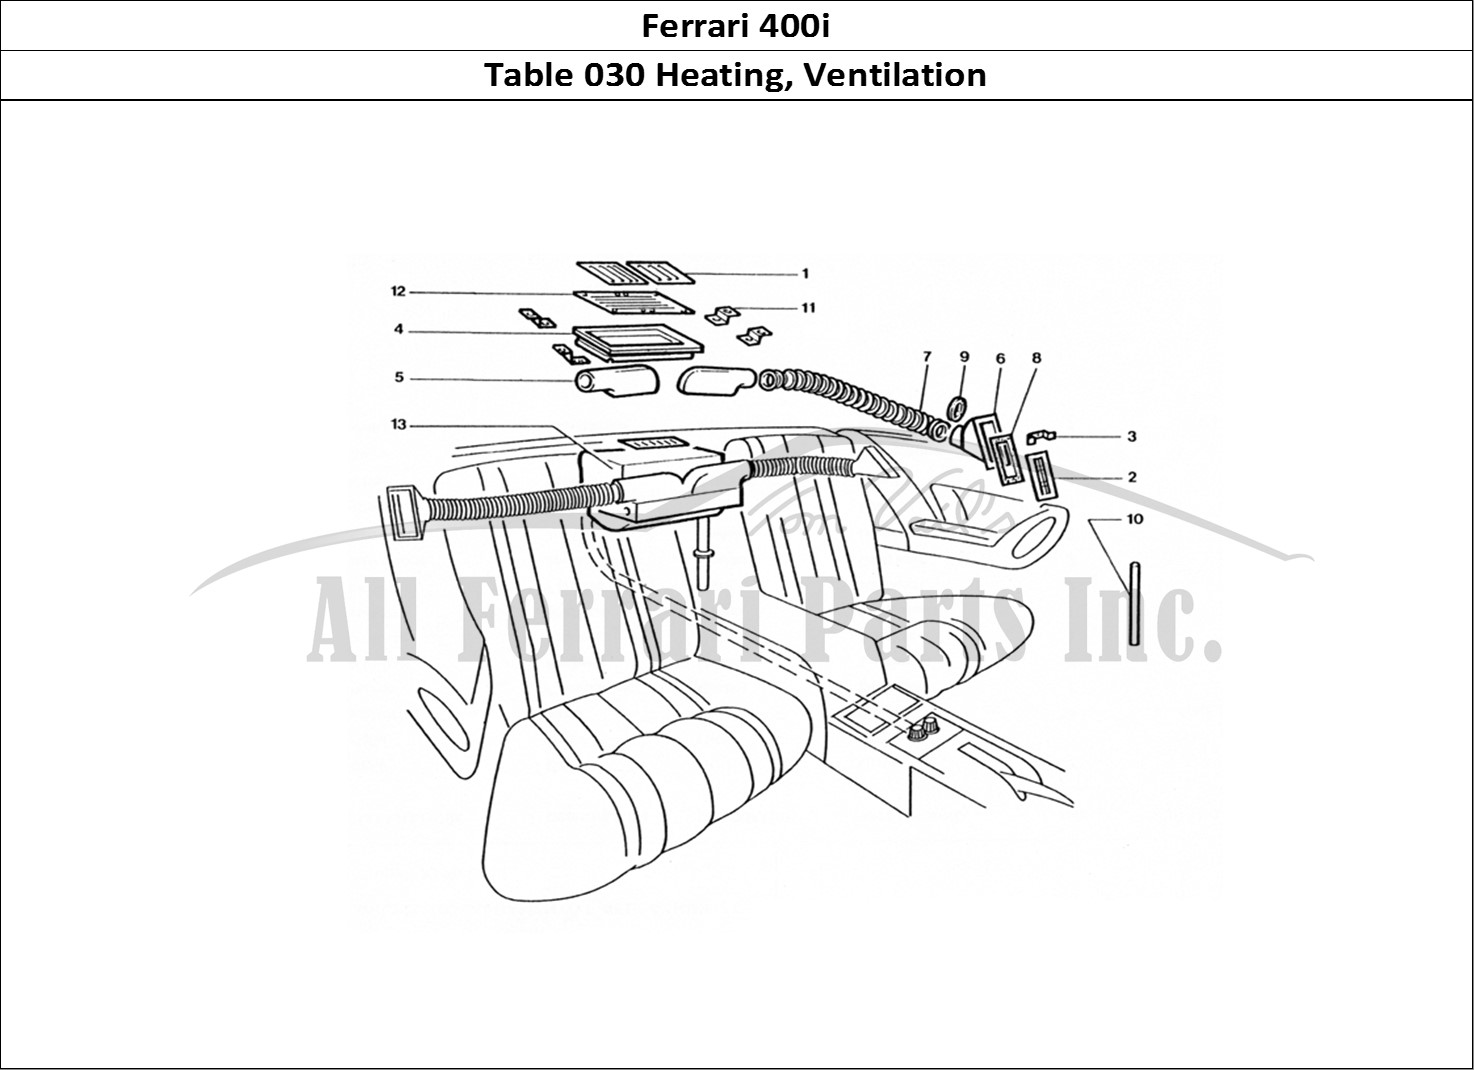 Ferrari Parts Ferrari 400 GT (Coachwork) Page 030 Rear Heater matrix